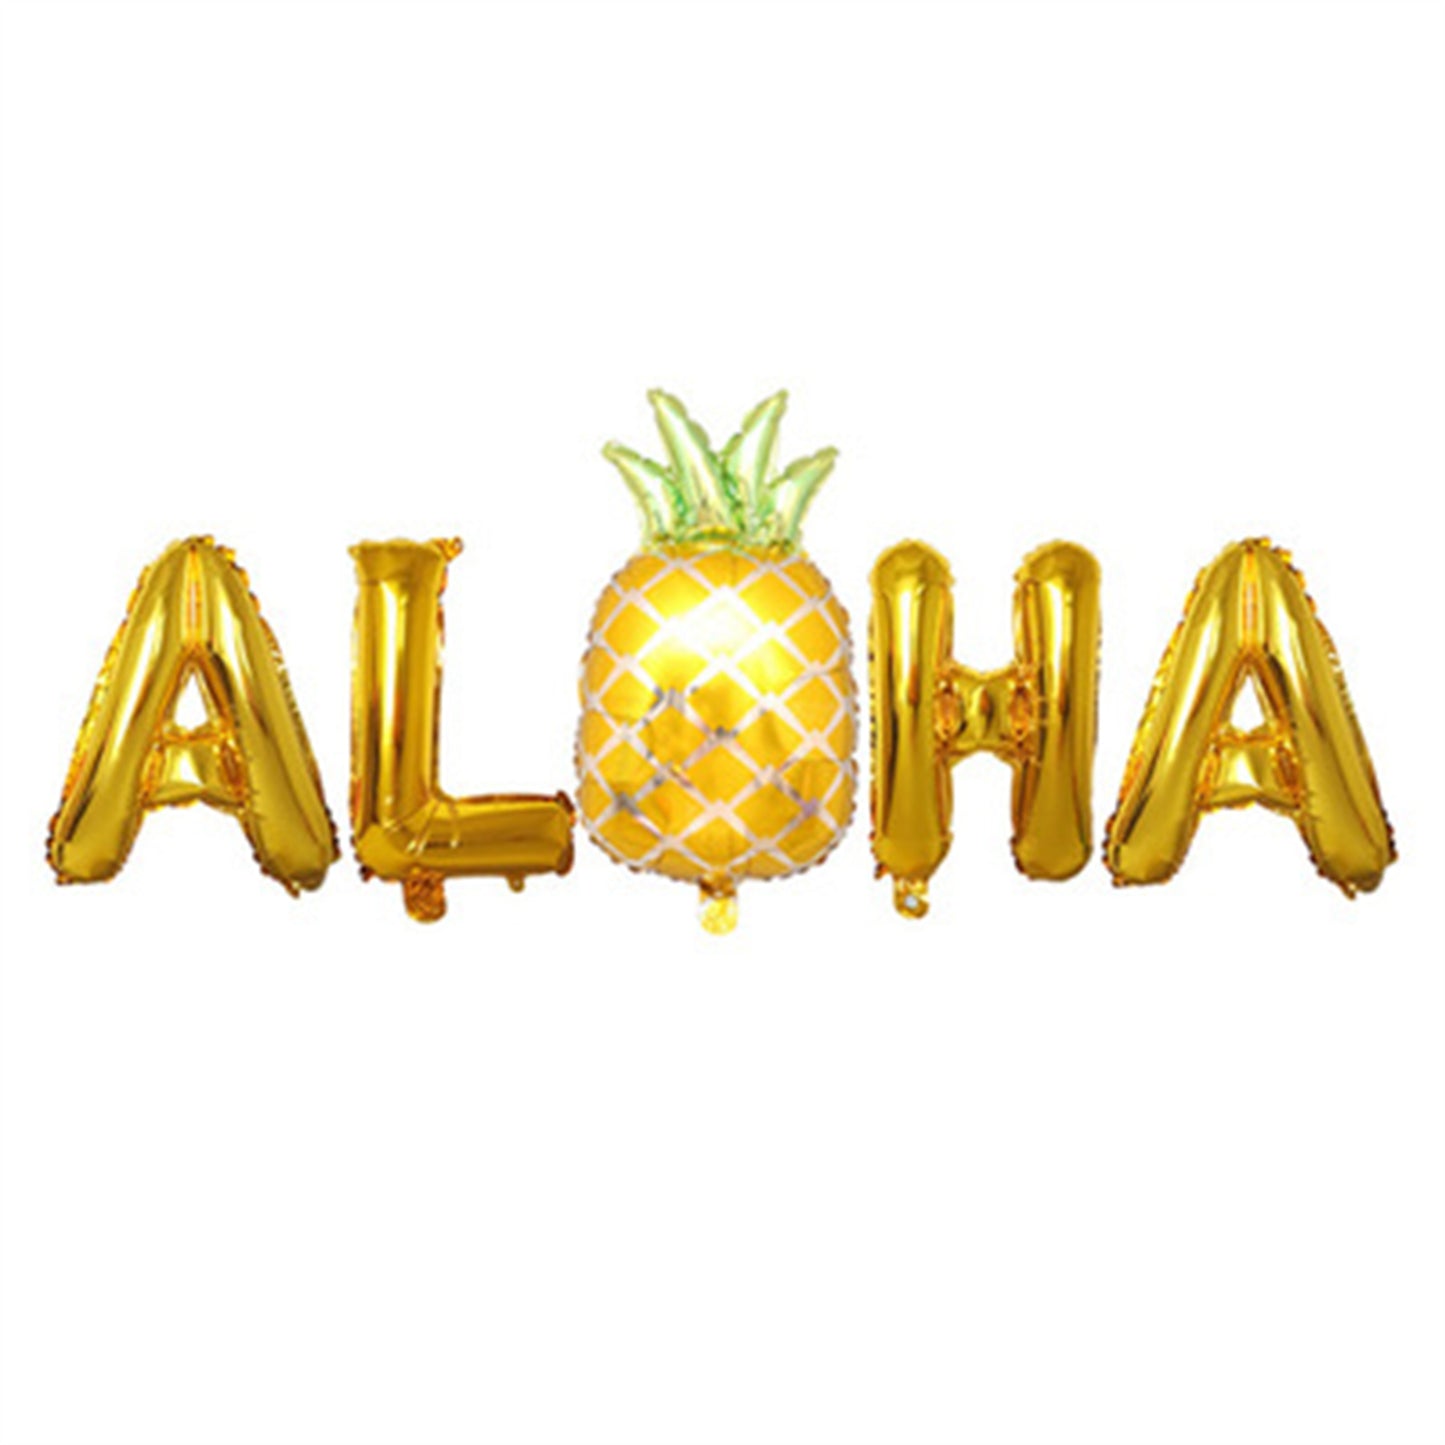 Hawaiian balloon pineapple decorative balloon set 16 inch ALOHA letter aluminum foil balloon rose gold balloon